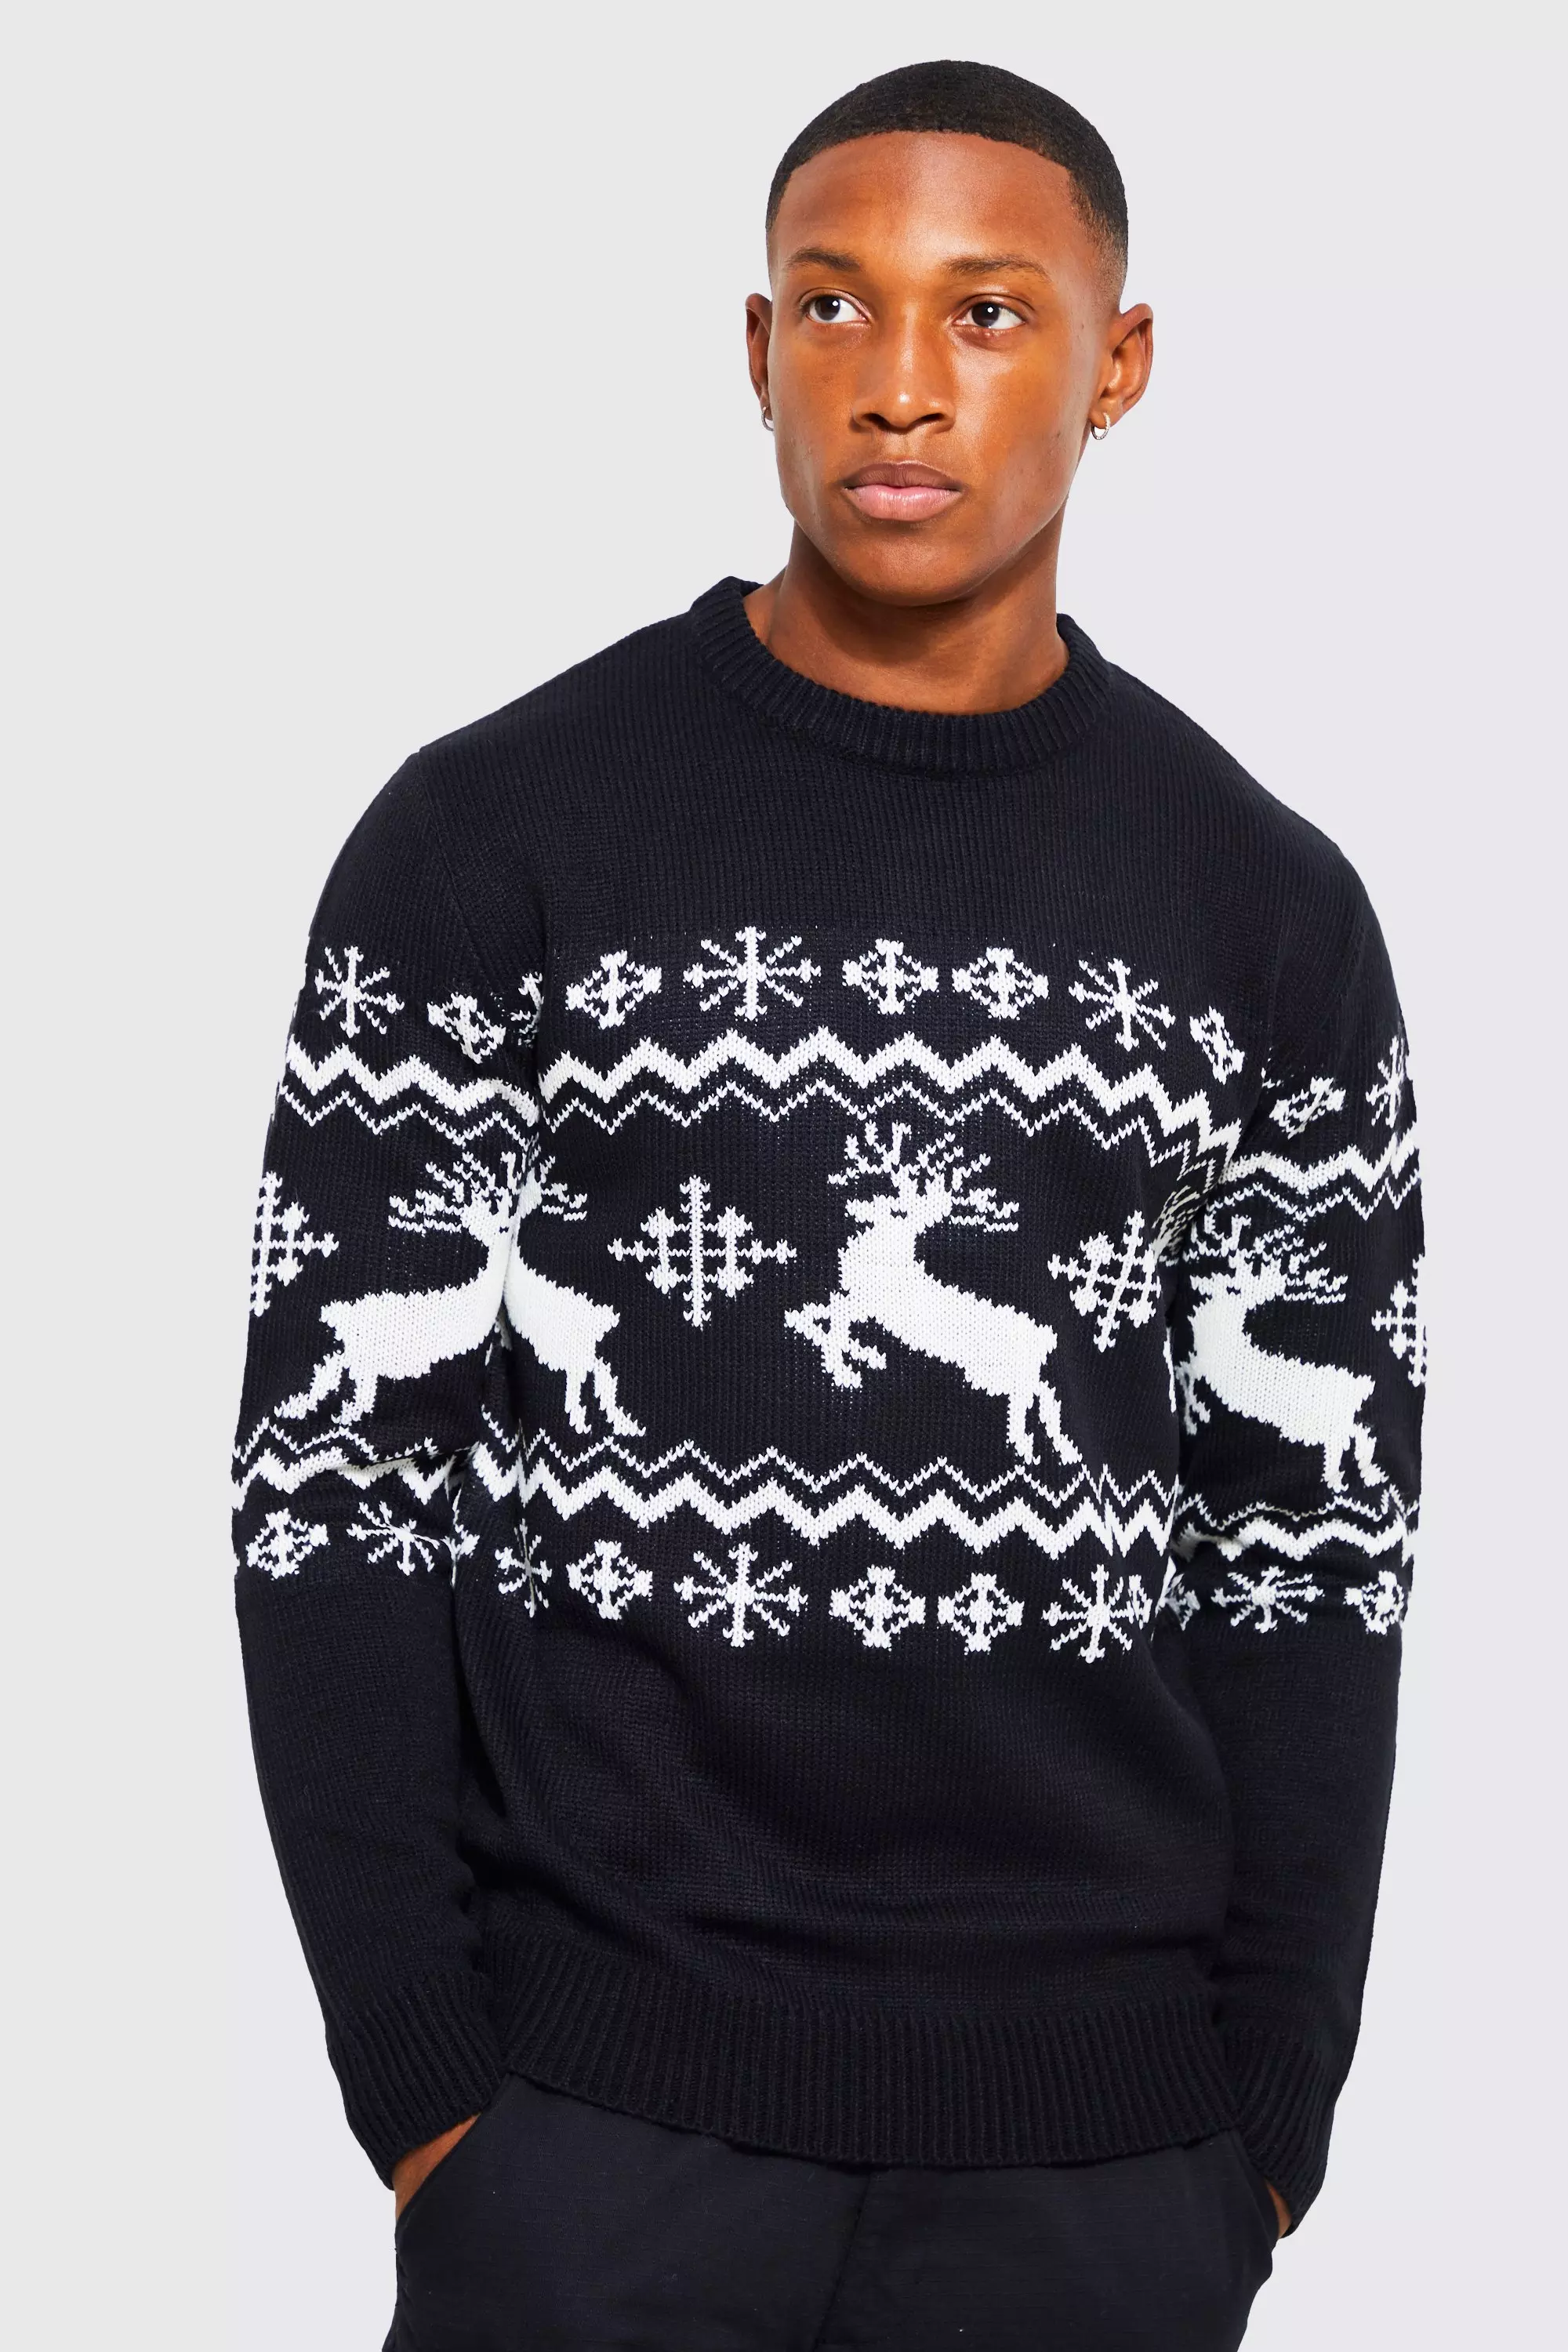 Reindeer Fairisle Christmas Sweater Black